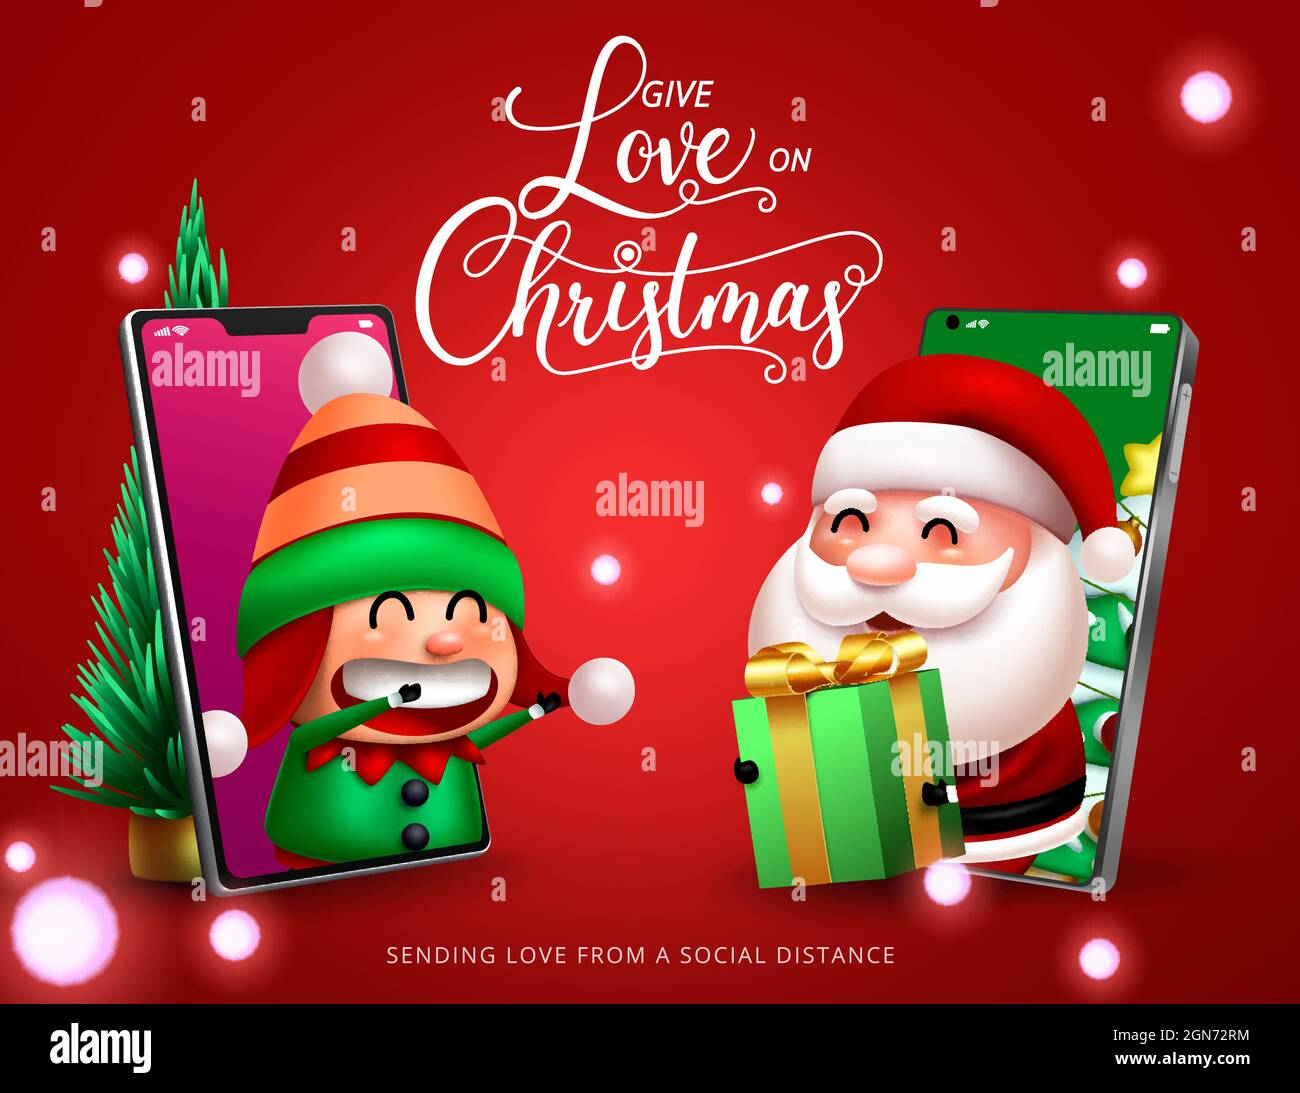 Regalo de Navidad con diseño vectorial de personajes. Da amor en el texto  del día de Navidad con virtual santa claus y lindo personaje elfo en el  teléfono móvil Imagen Vector de